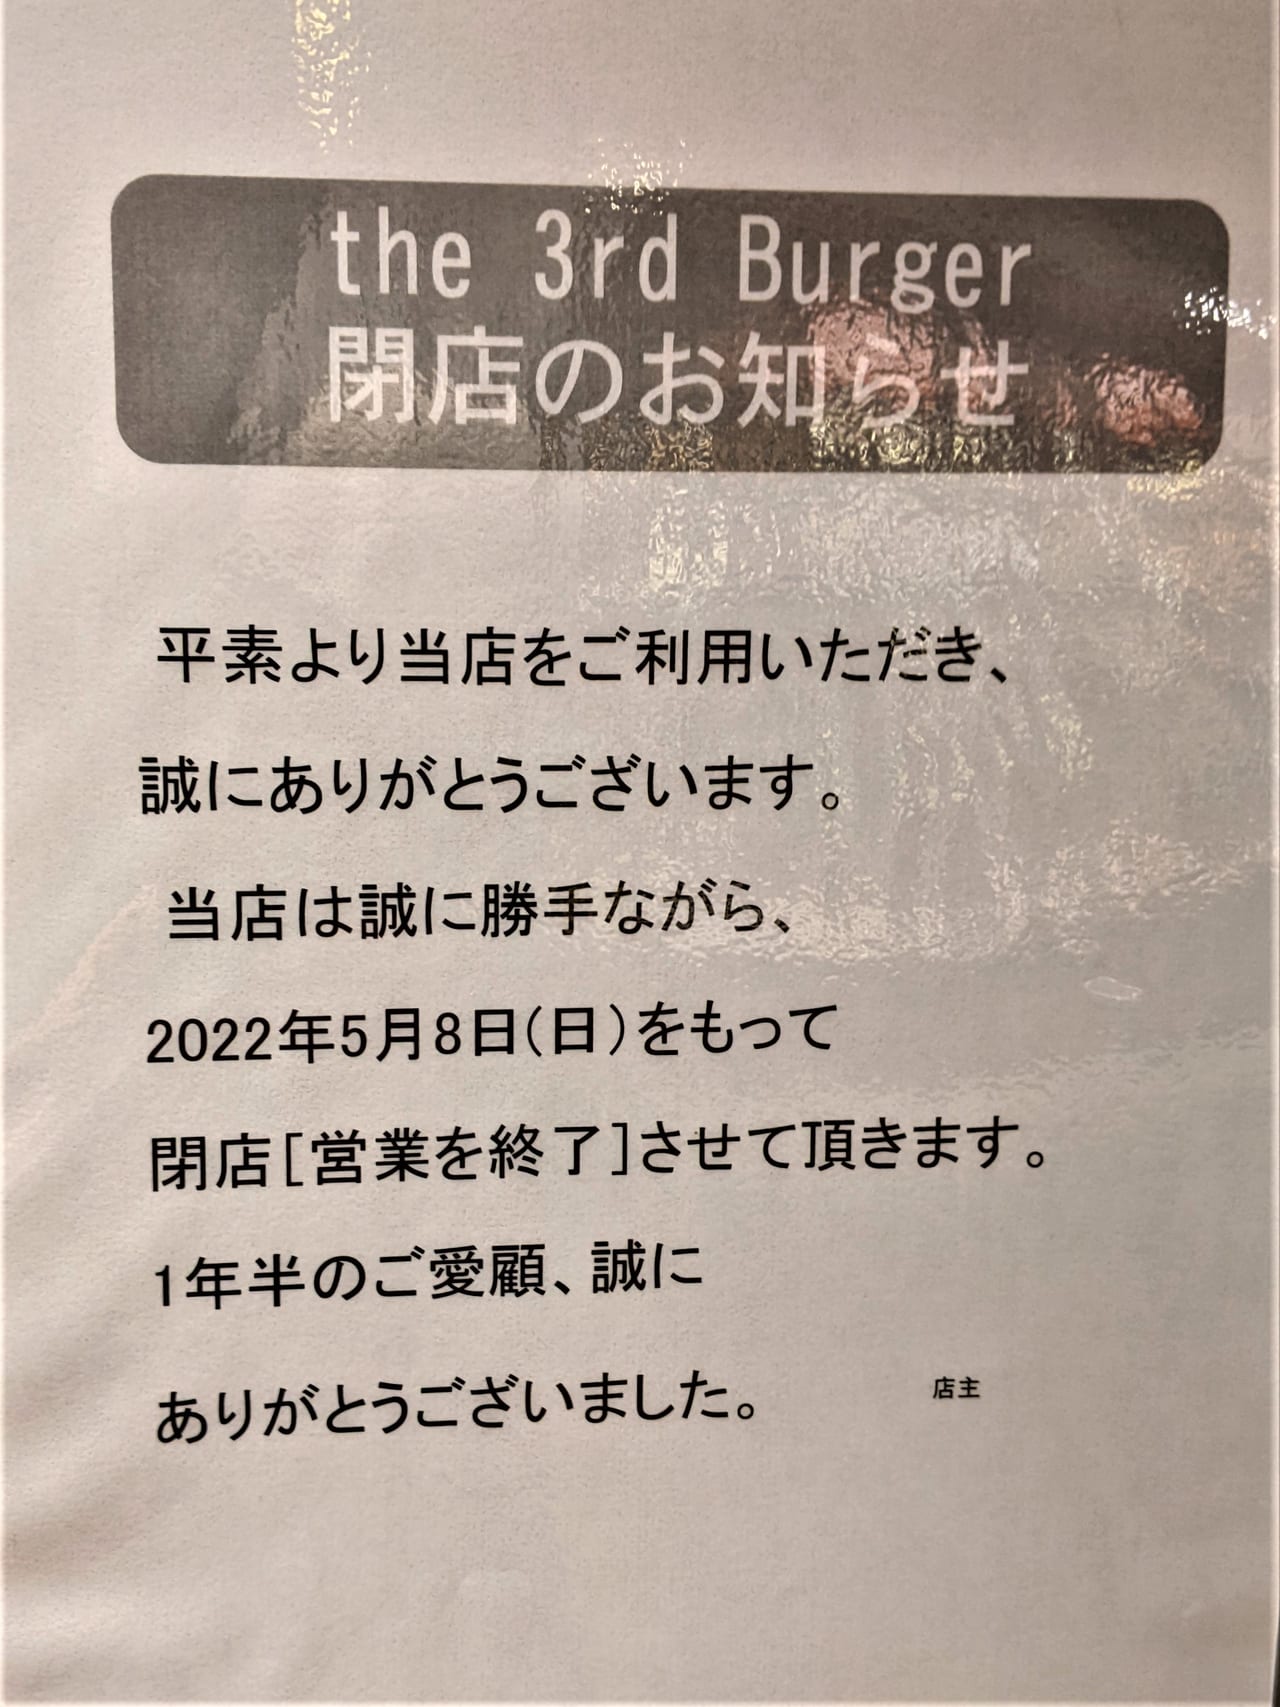 「the 3rd Burger 岡山一番街店」の閉店のお知らせ